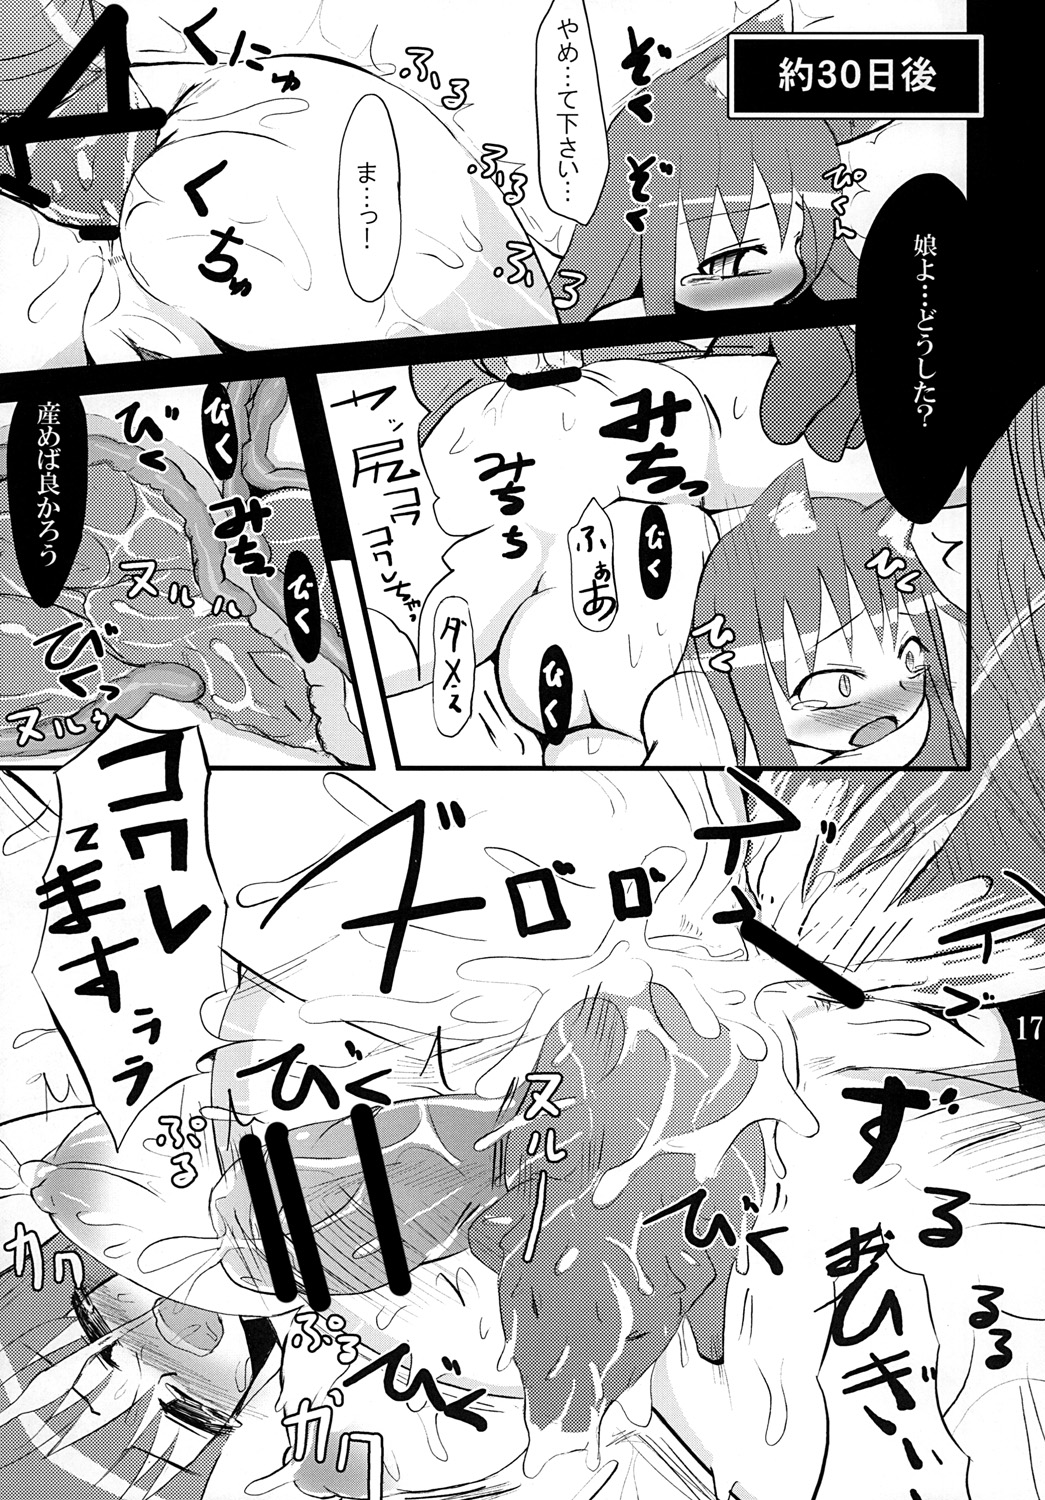 [Hakusyoku Miminagaten] Chaos 2 page 18 full